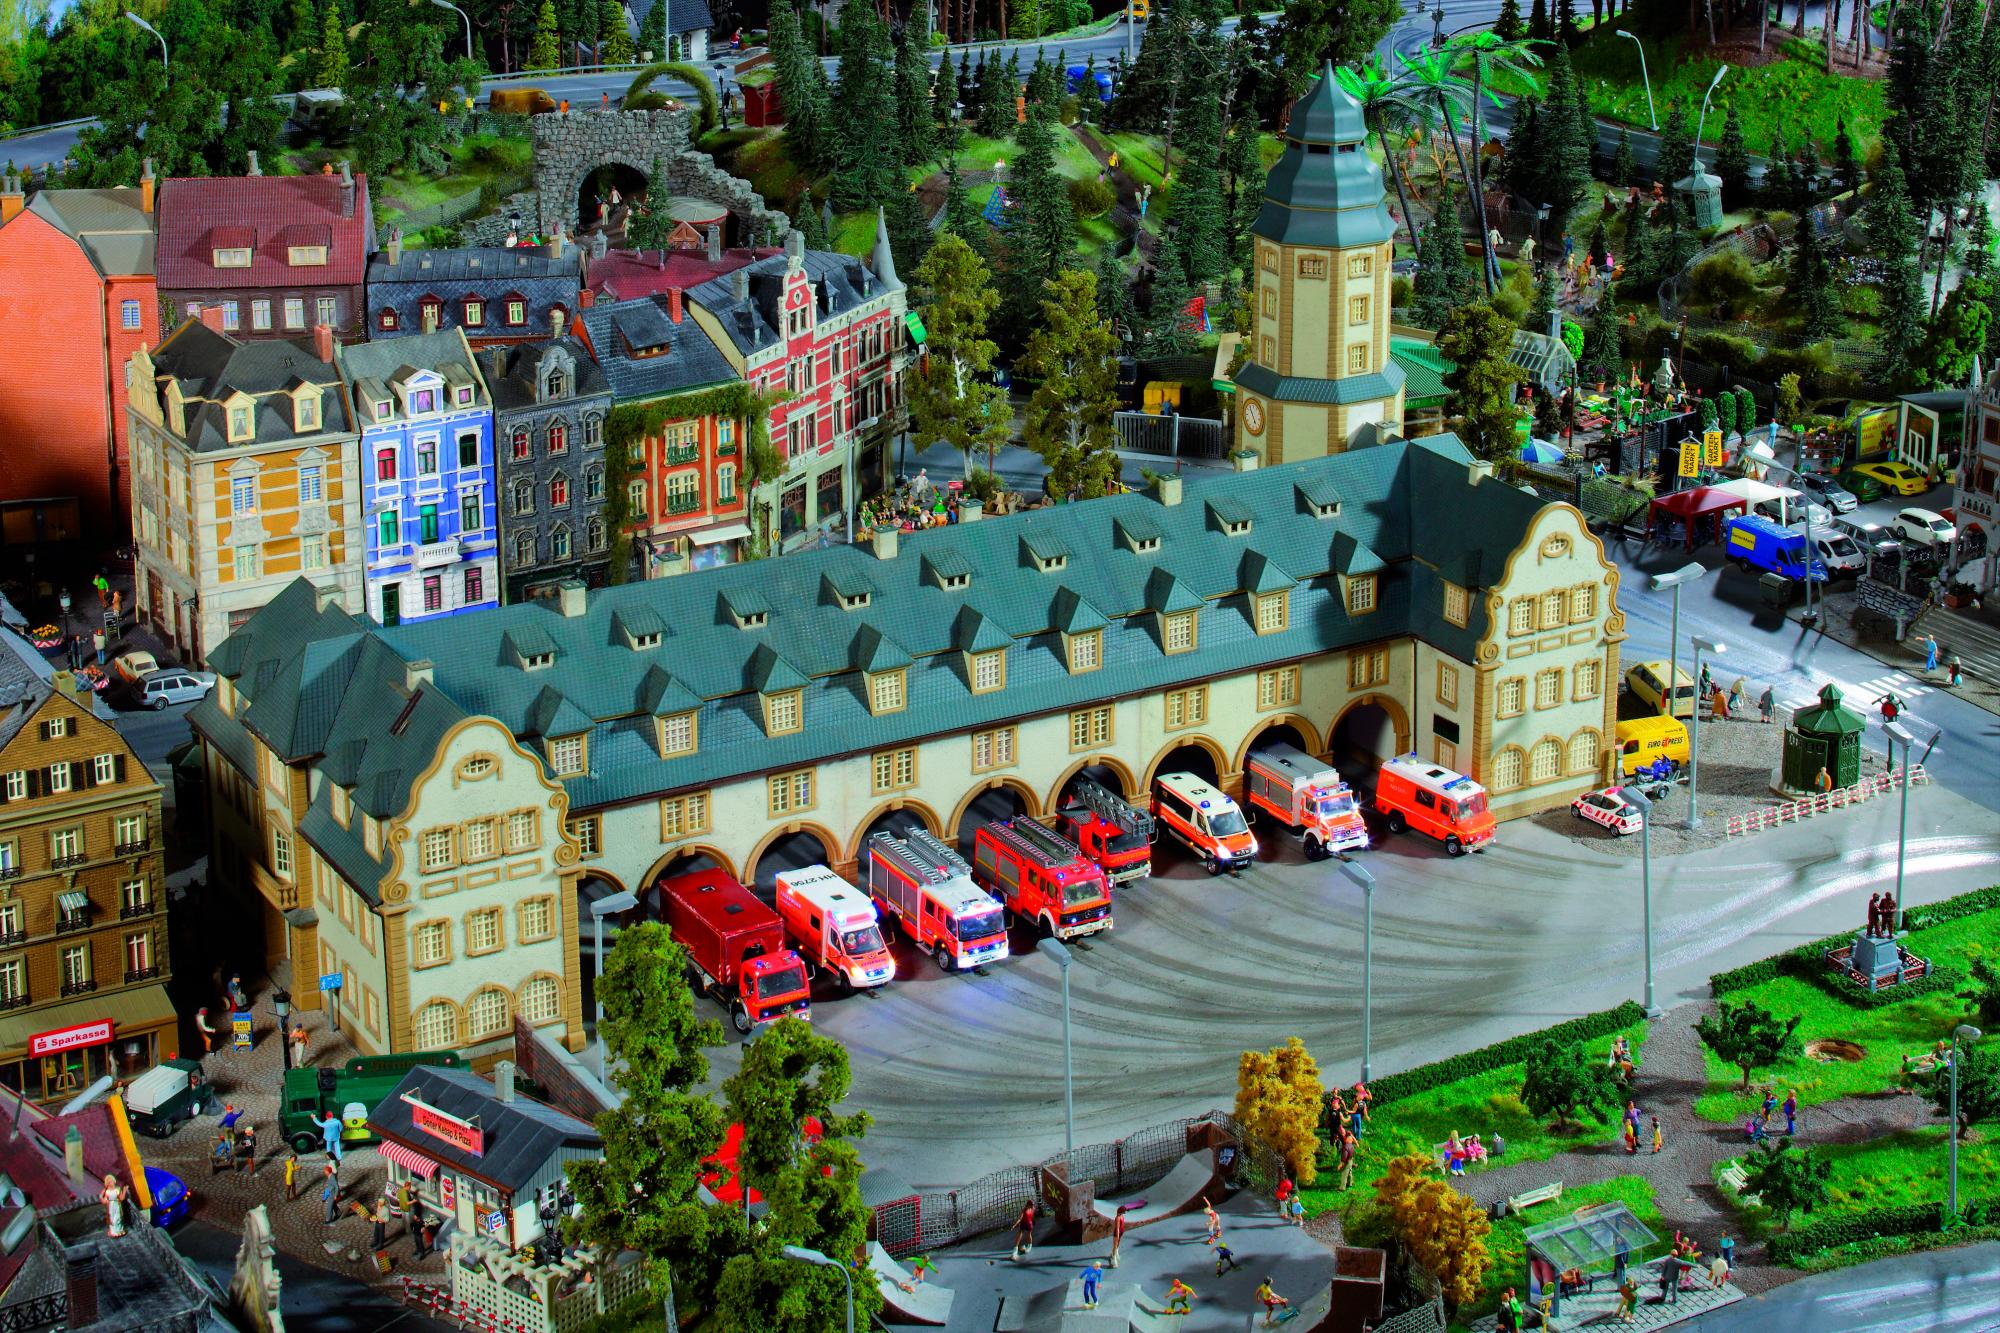 Imagen de una fantástica estación de bomberos en miniatura con todos los detalles.